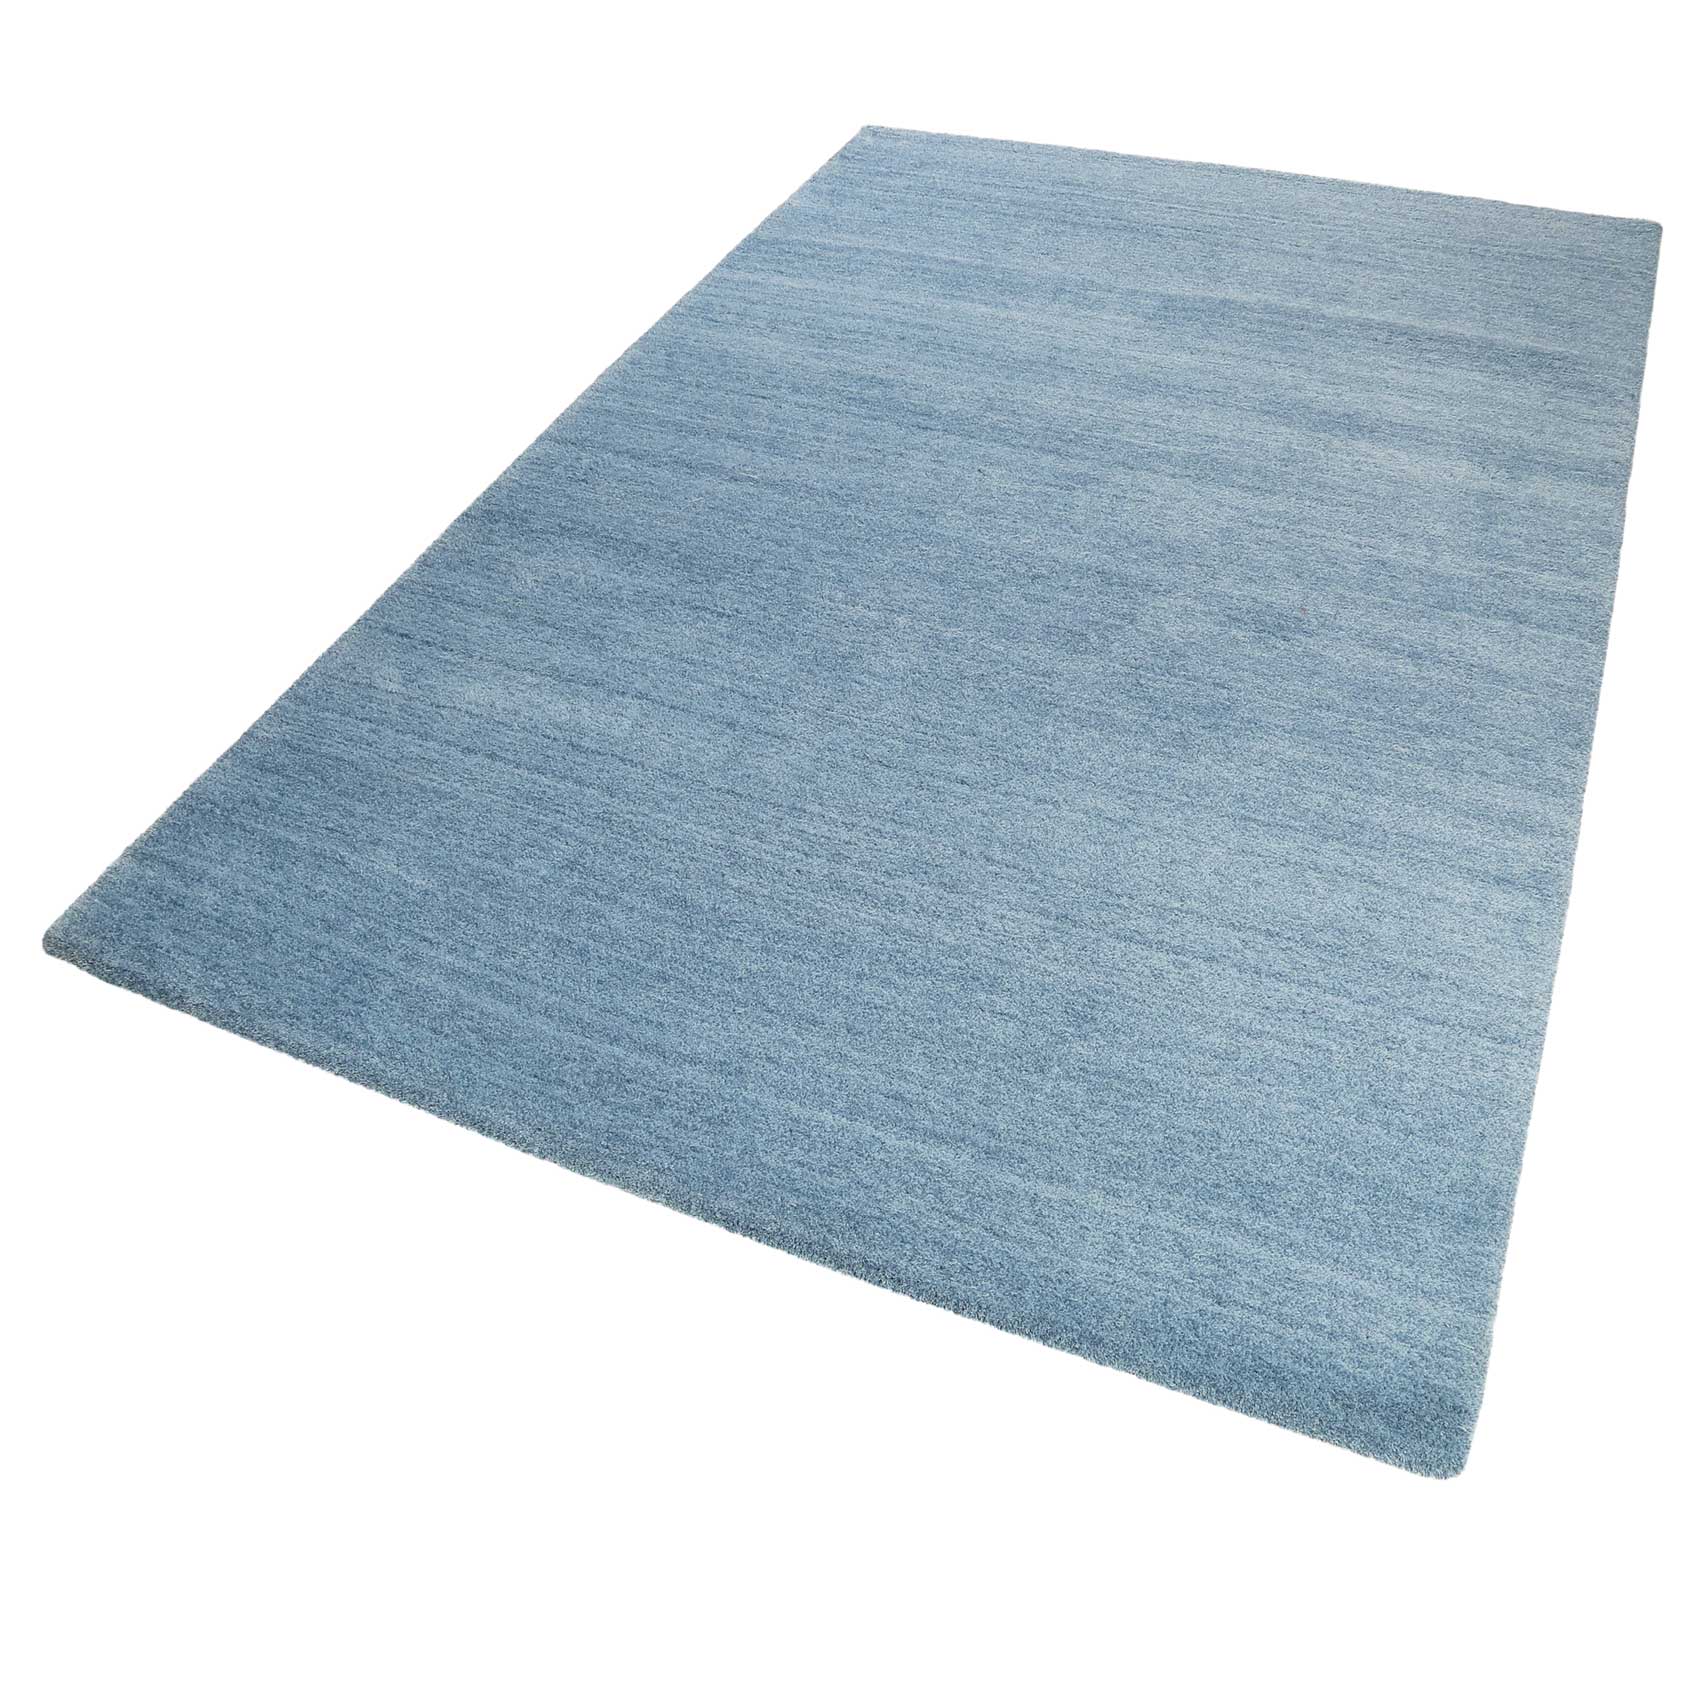 Esprit Teppich Blau meliert Hochflor » Loft « - Ansicht 3